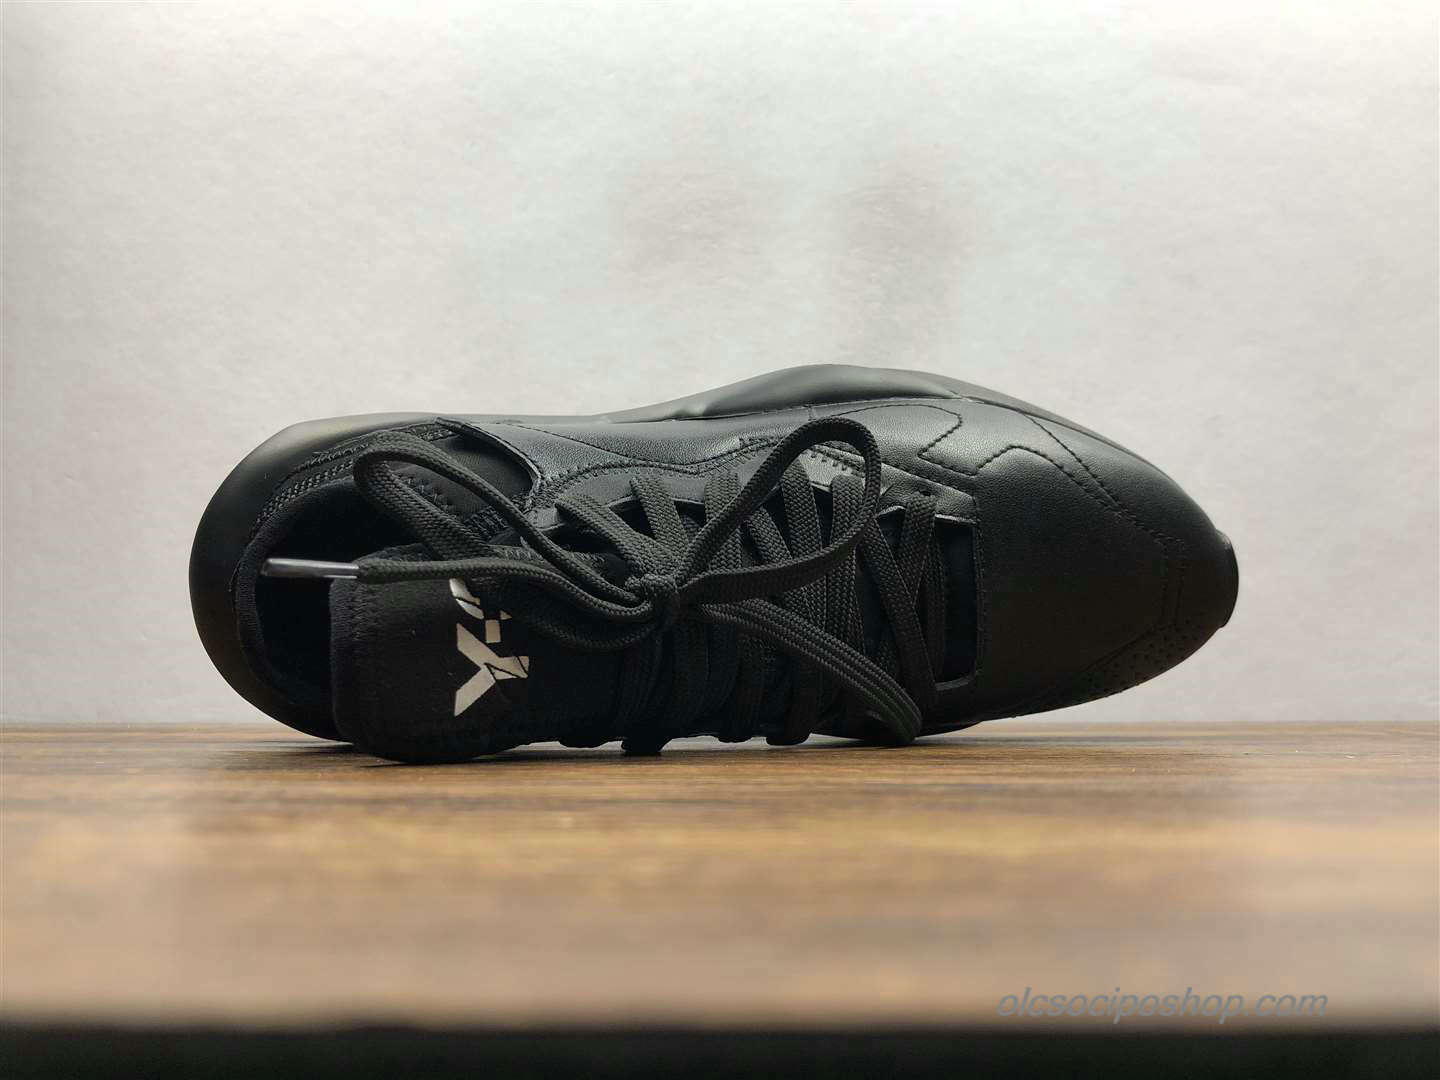 Yohji Yamamoto x Adidas Y-3 Kaiwa Chunky Fekete Cipők (A1616) - Kattintásra bezárul